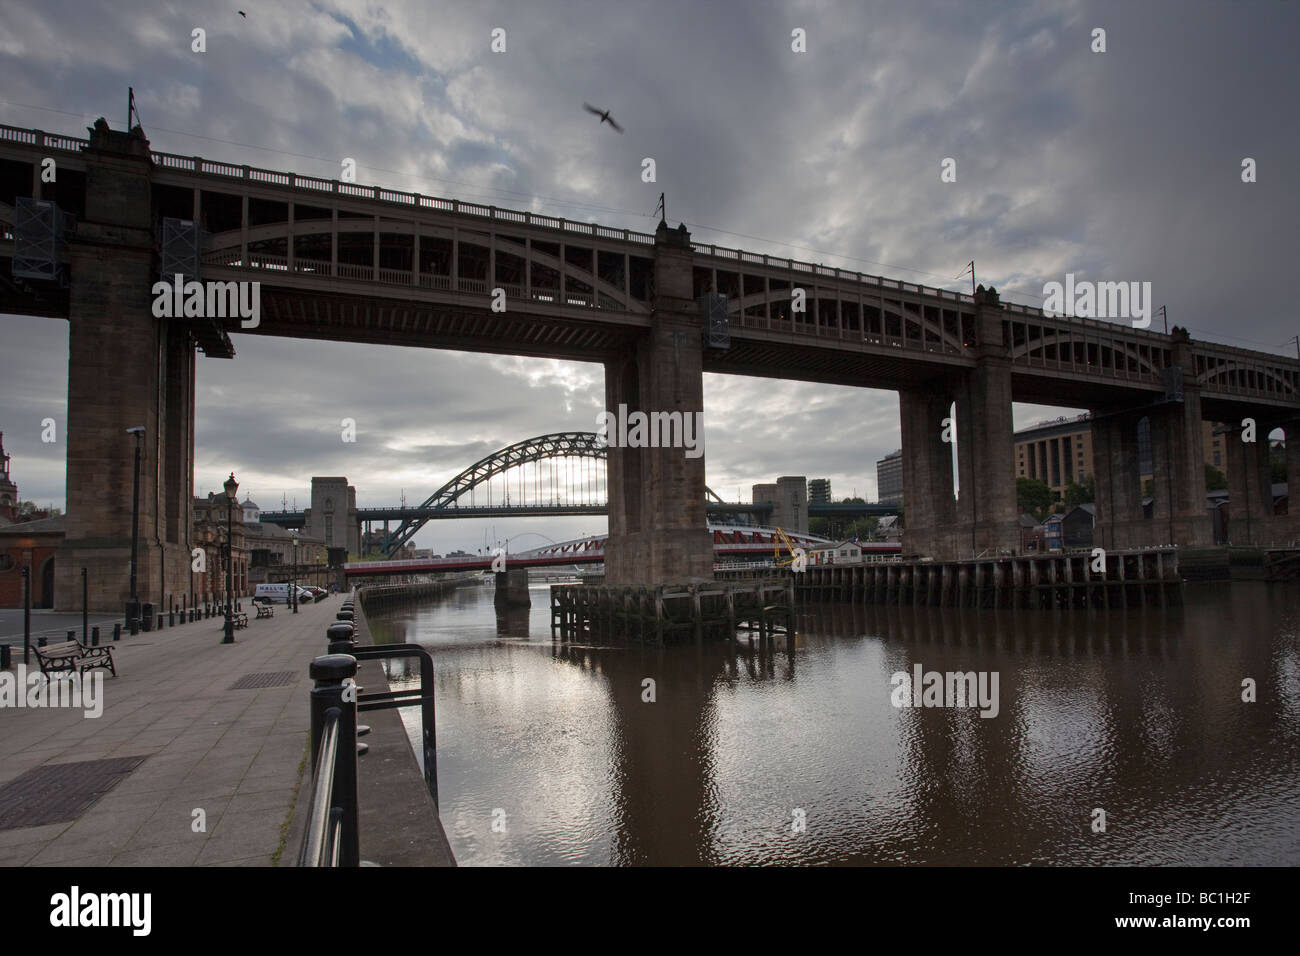 Juin jeudi matin sur la rivière Tyne Newcastle upon Tyne avec le pont de haut niveau à l'avant-plan Banque D'Images